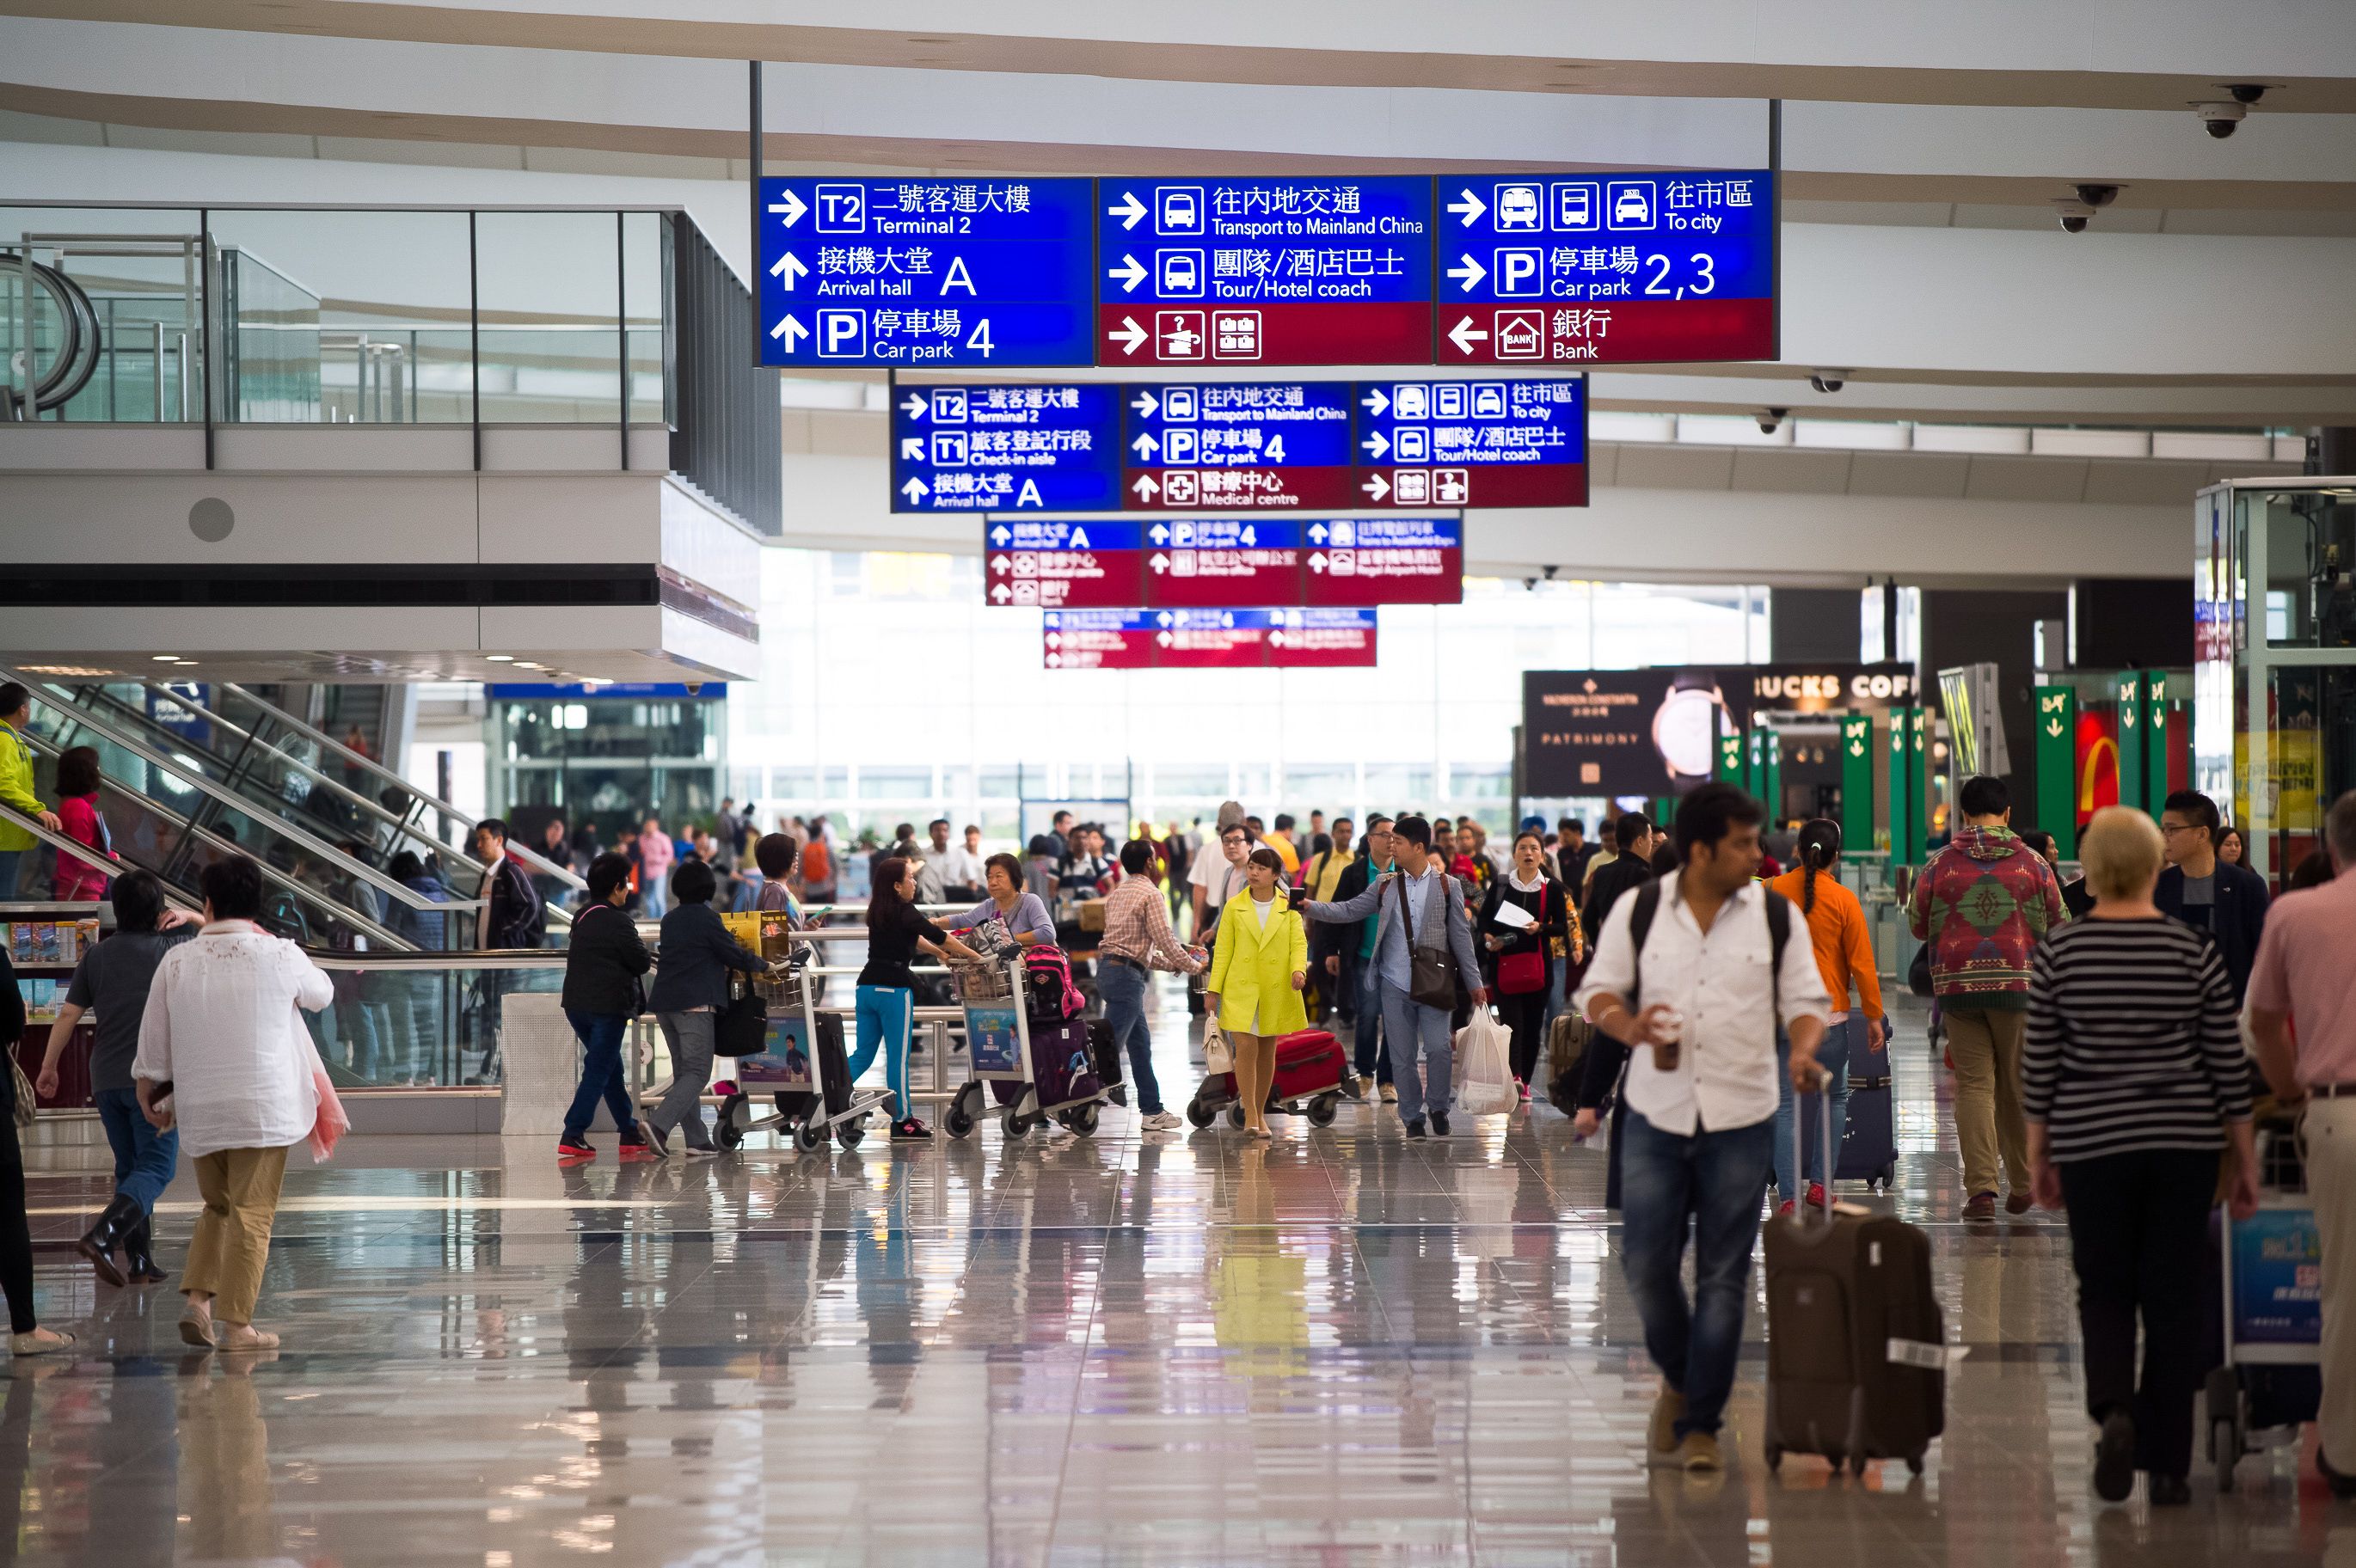 hong kong airport terminal with passengers walking